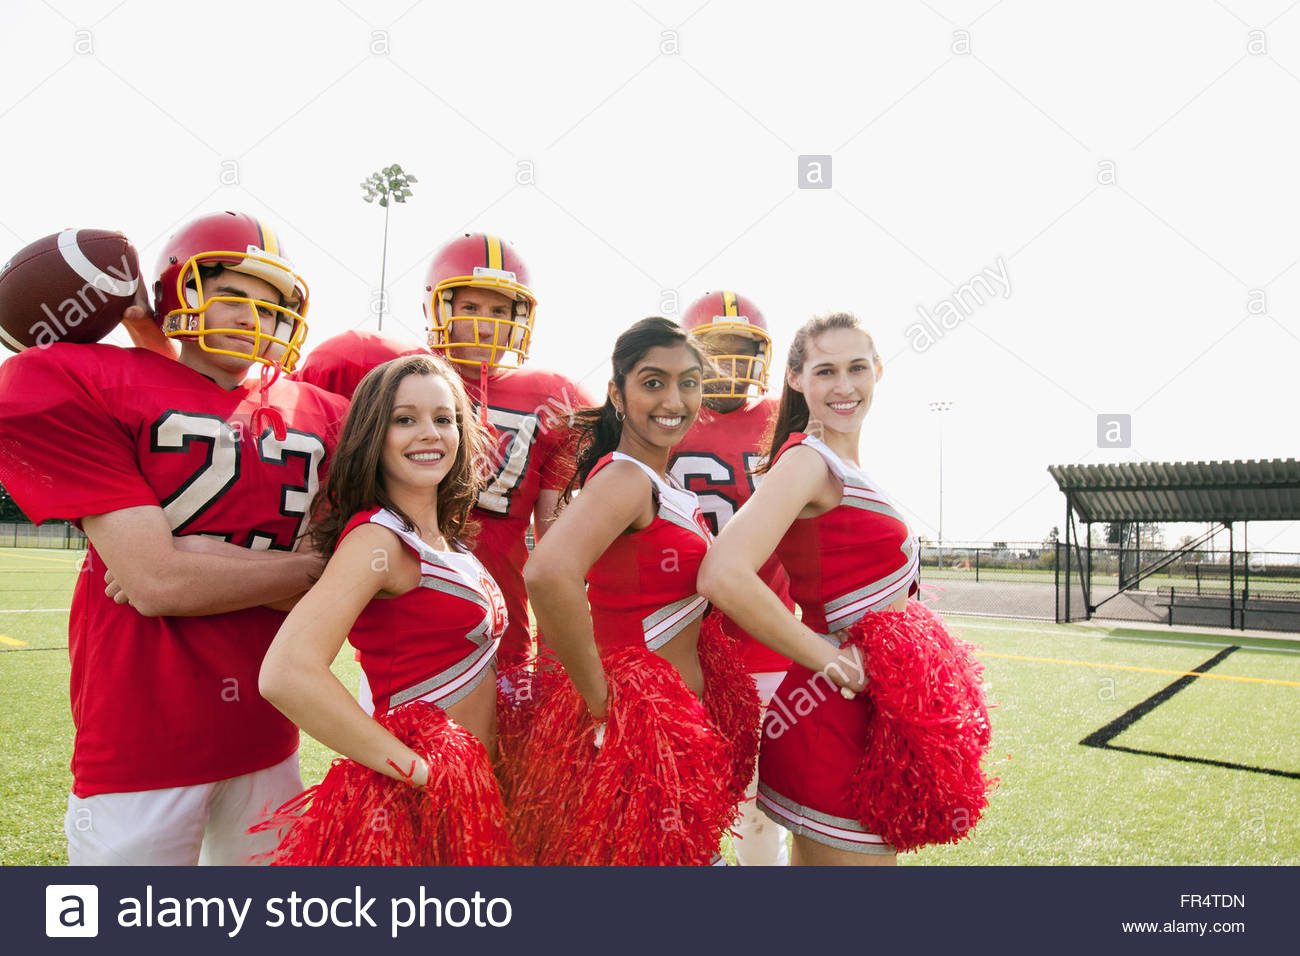 Los jugadores de fútbol americano universitario con cheerleaders Foto de stock